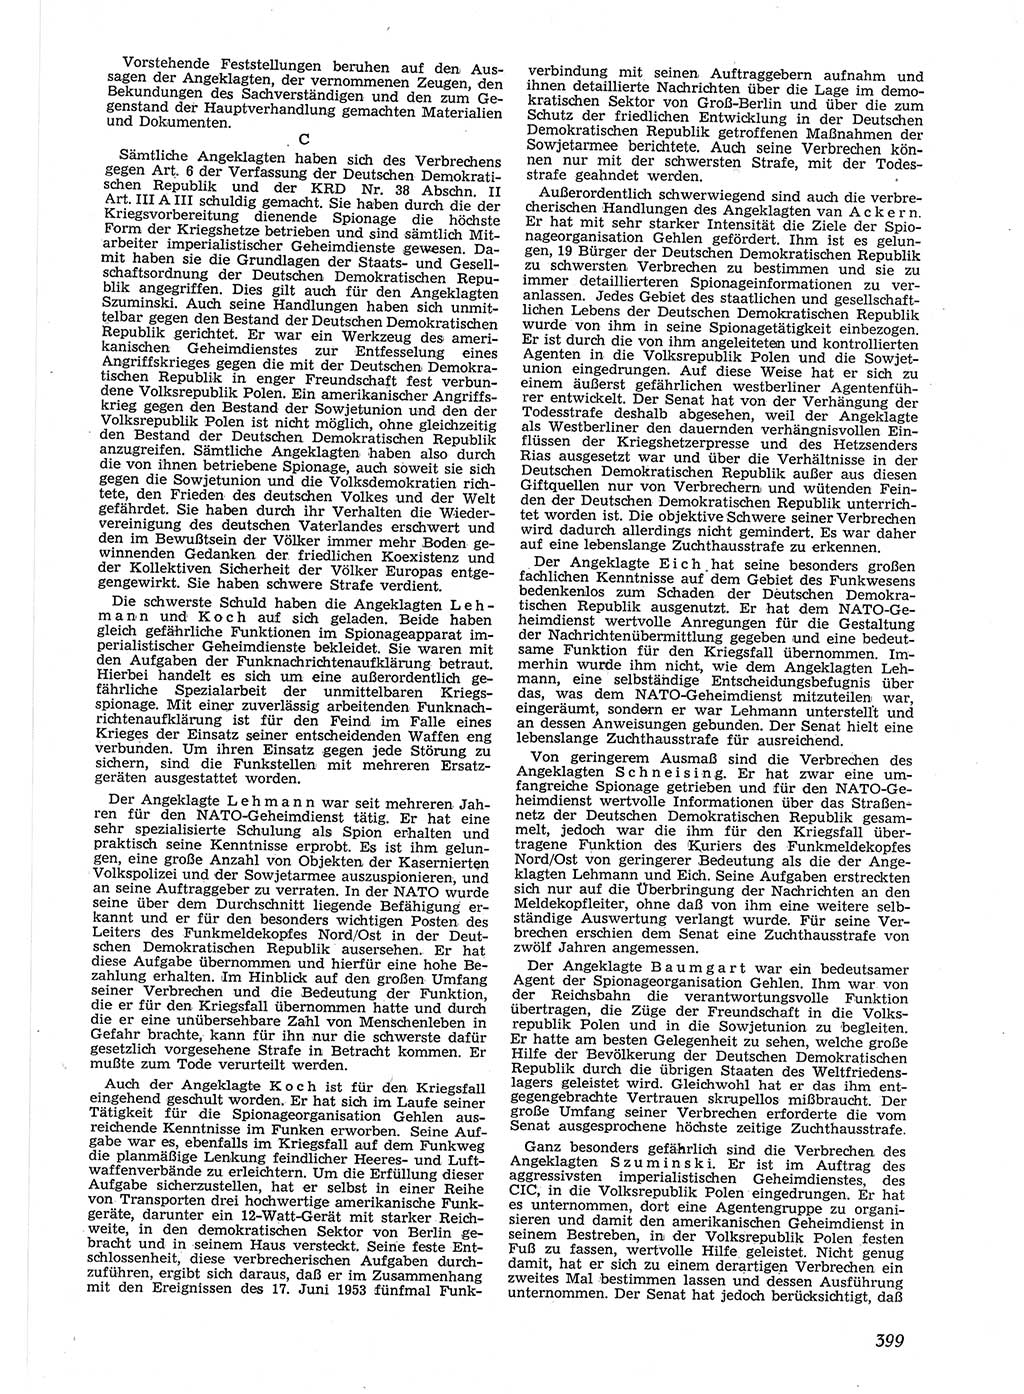 Neue Justiz (NJ), Zeitschrift für Recht und Rechtswissenschaft [Deutsche Demokratische Republik (DDR)], 9. Jahrgang 1955, Seite 399 (NJ DDR 1955, S. 399)